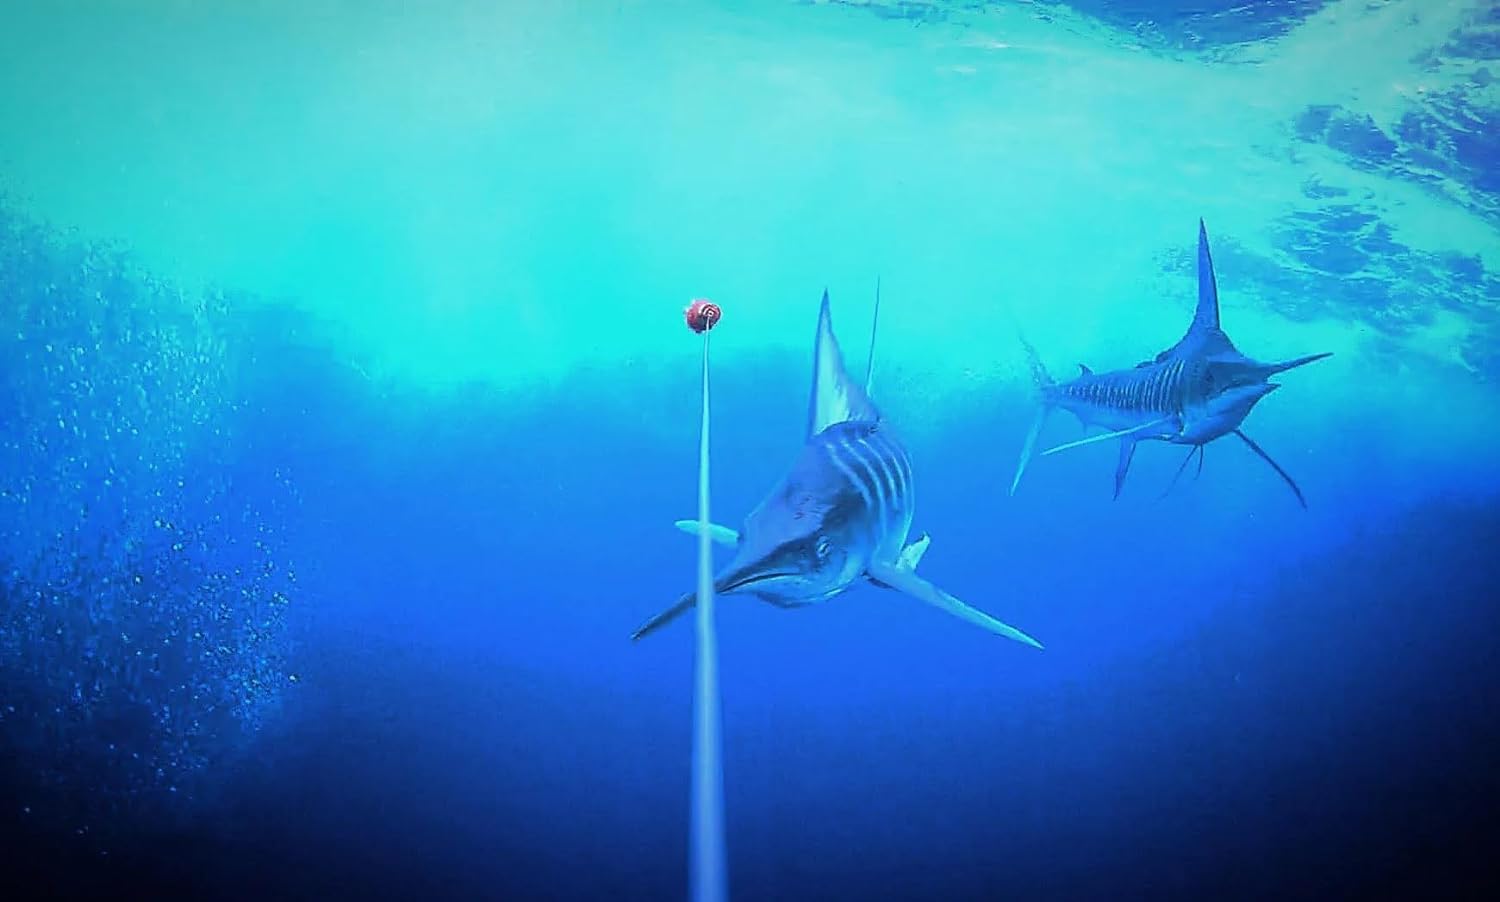 Gofish Cam - Wireless Underwater Fishing Camera